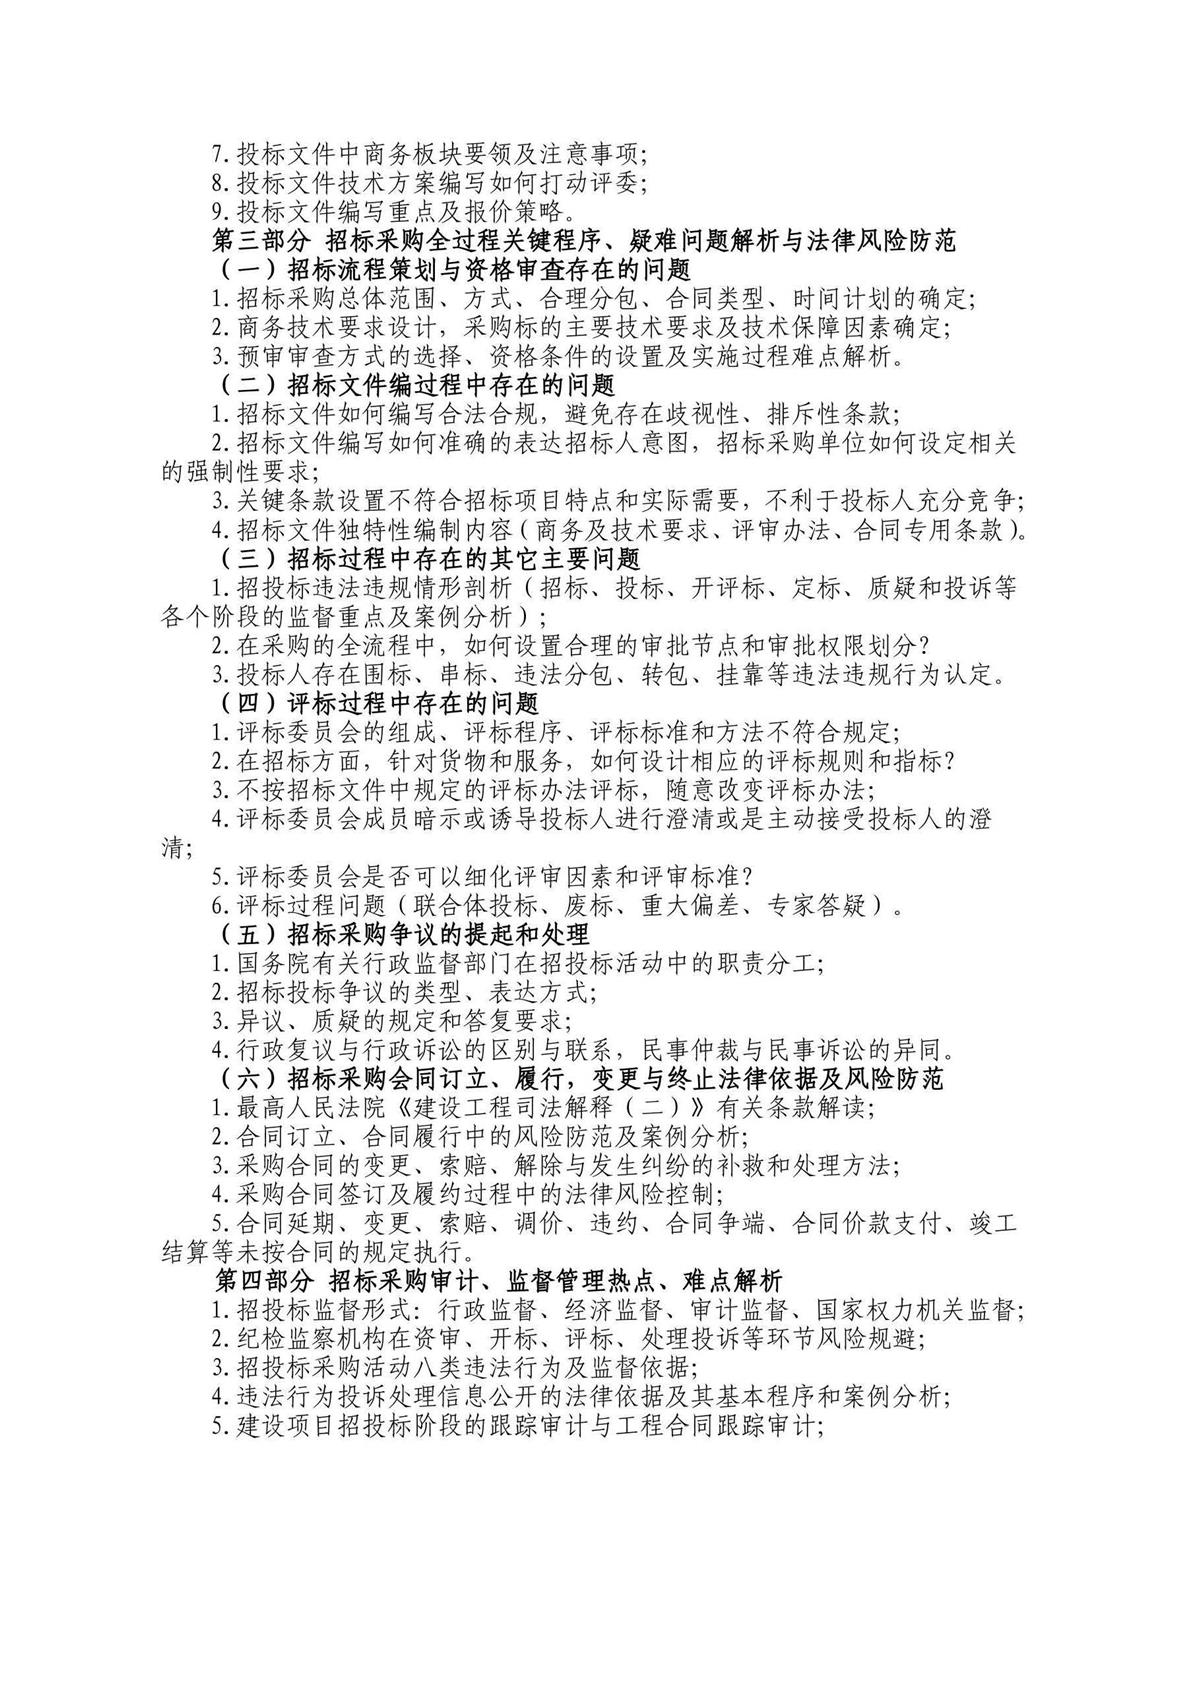 05.28-31北京招标采购培训详情_页面_2.jpg